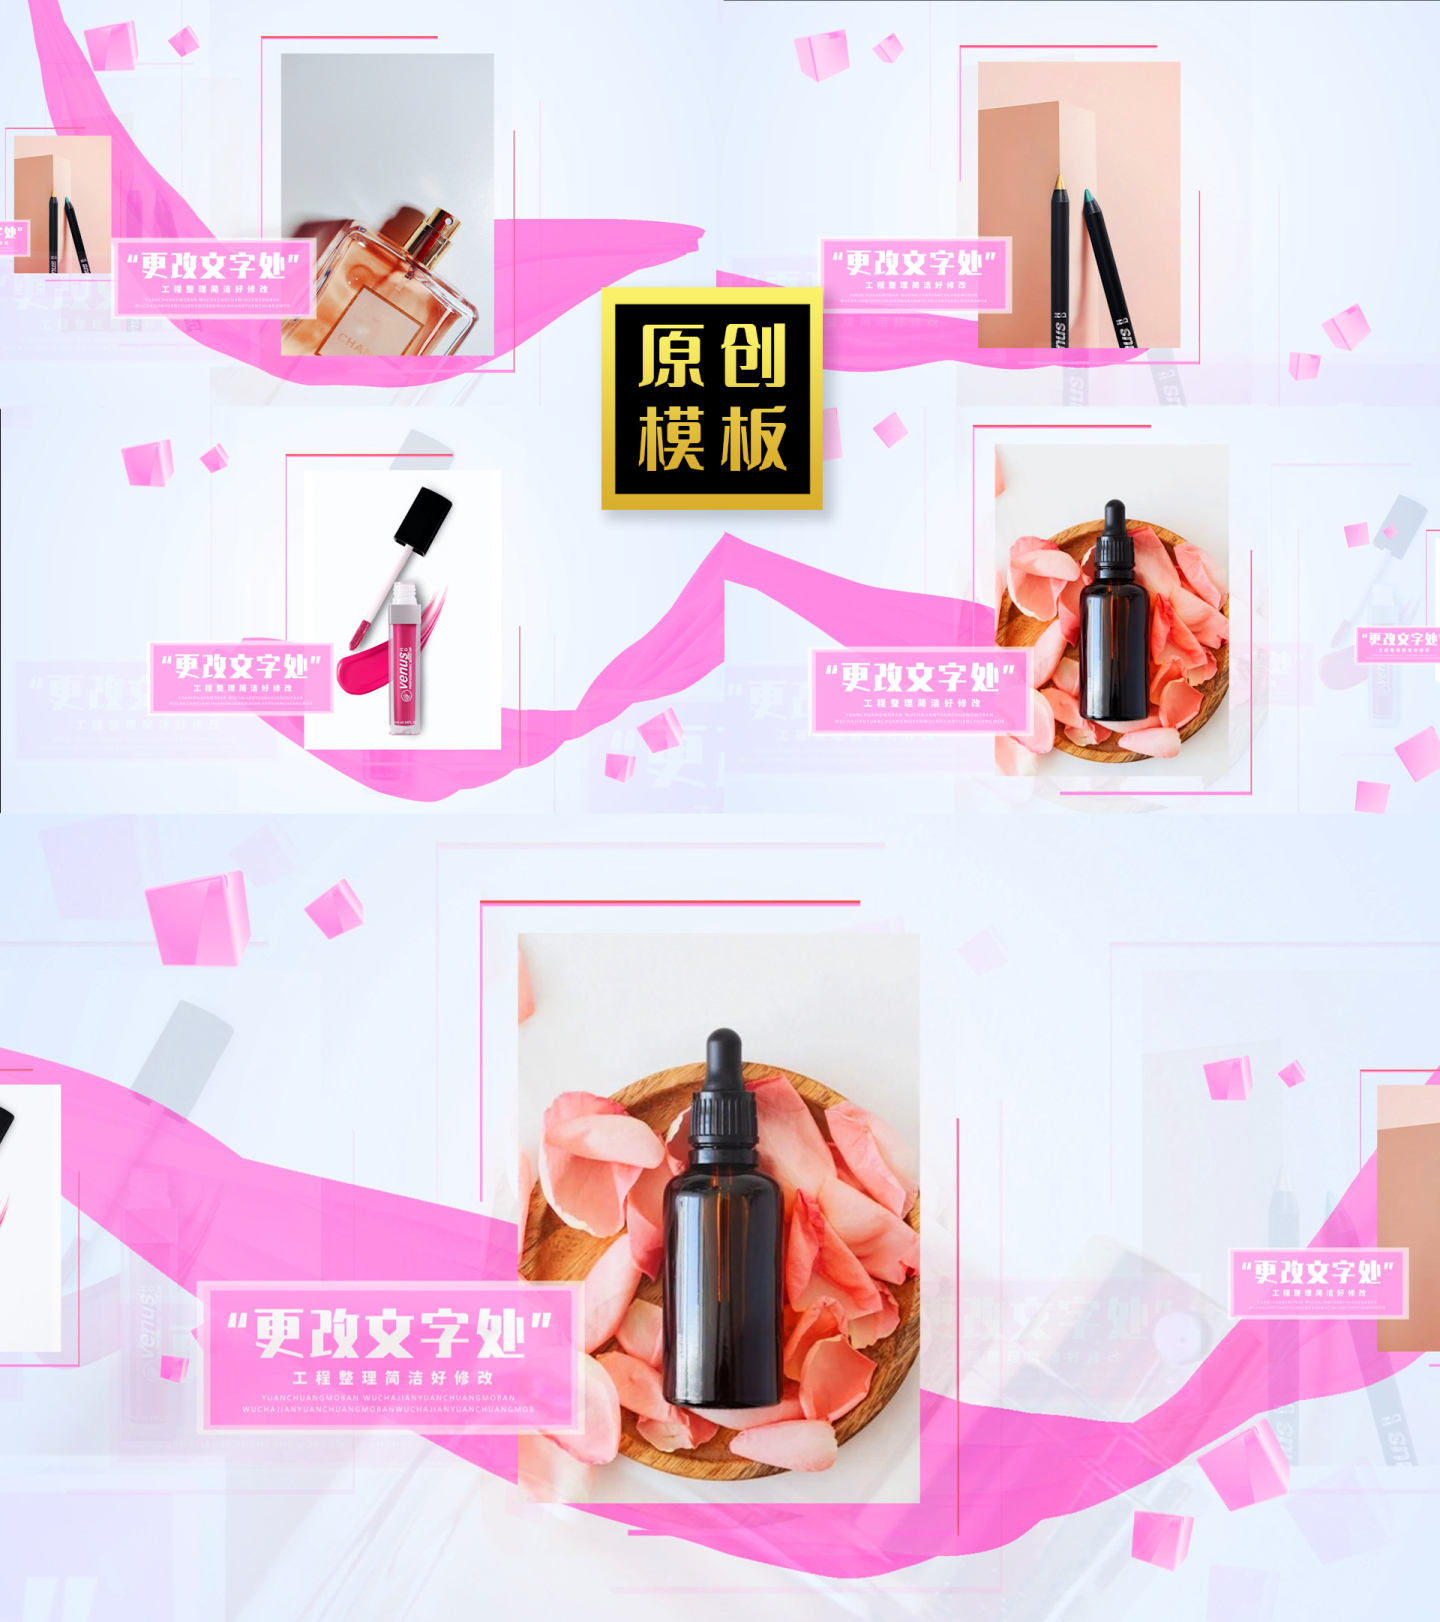 48图粉色唯美产品照片介绍活动图片包装